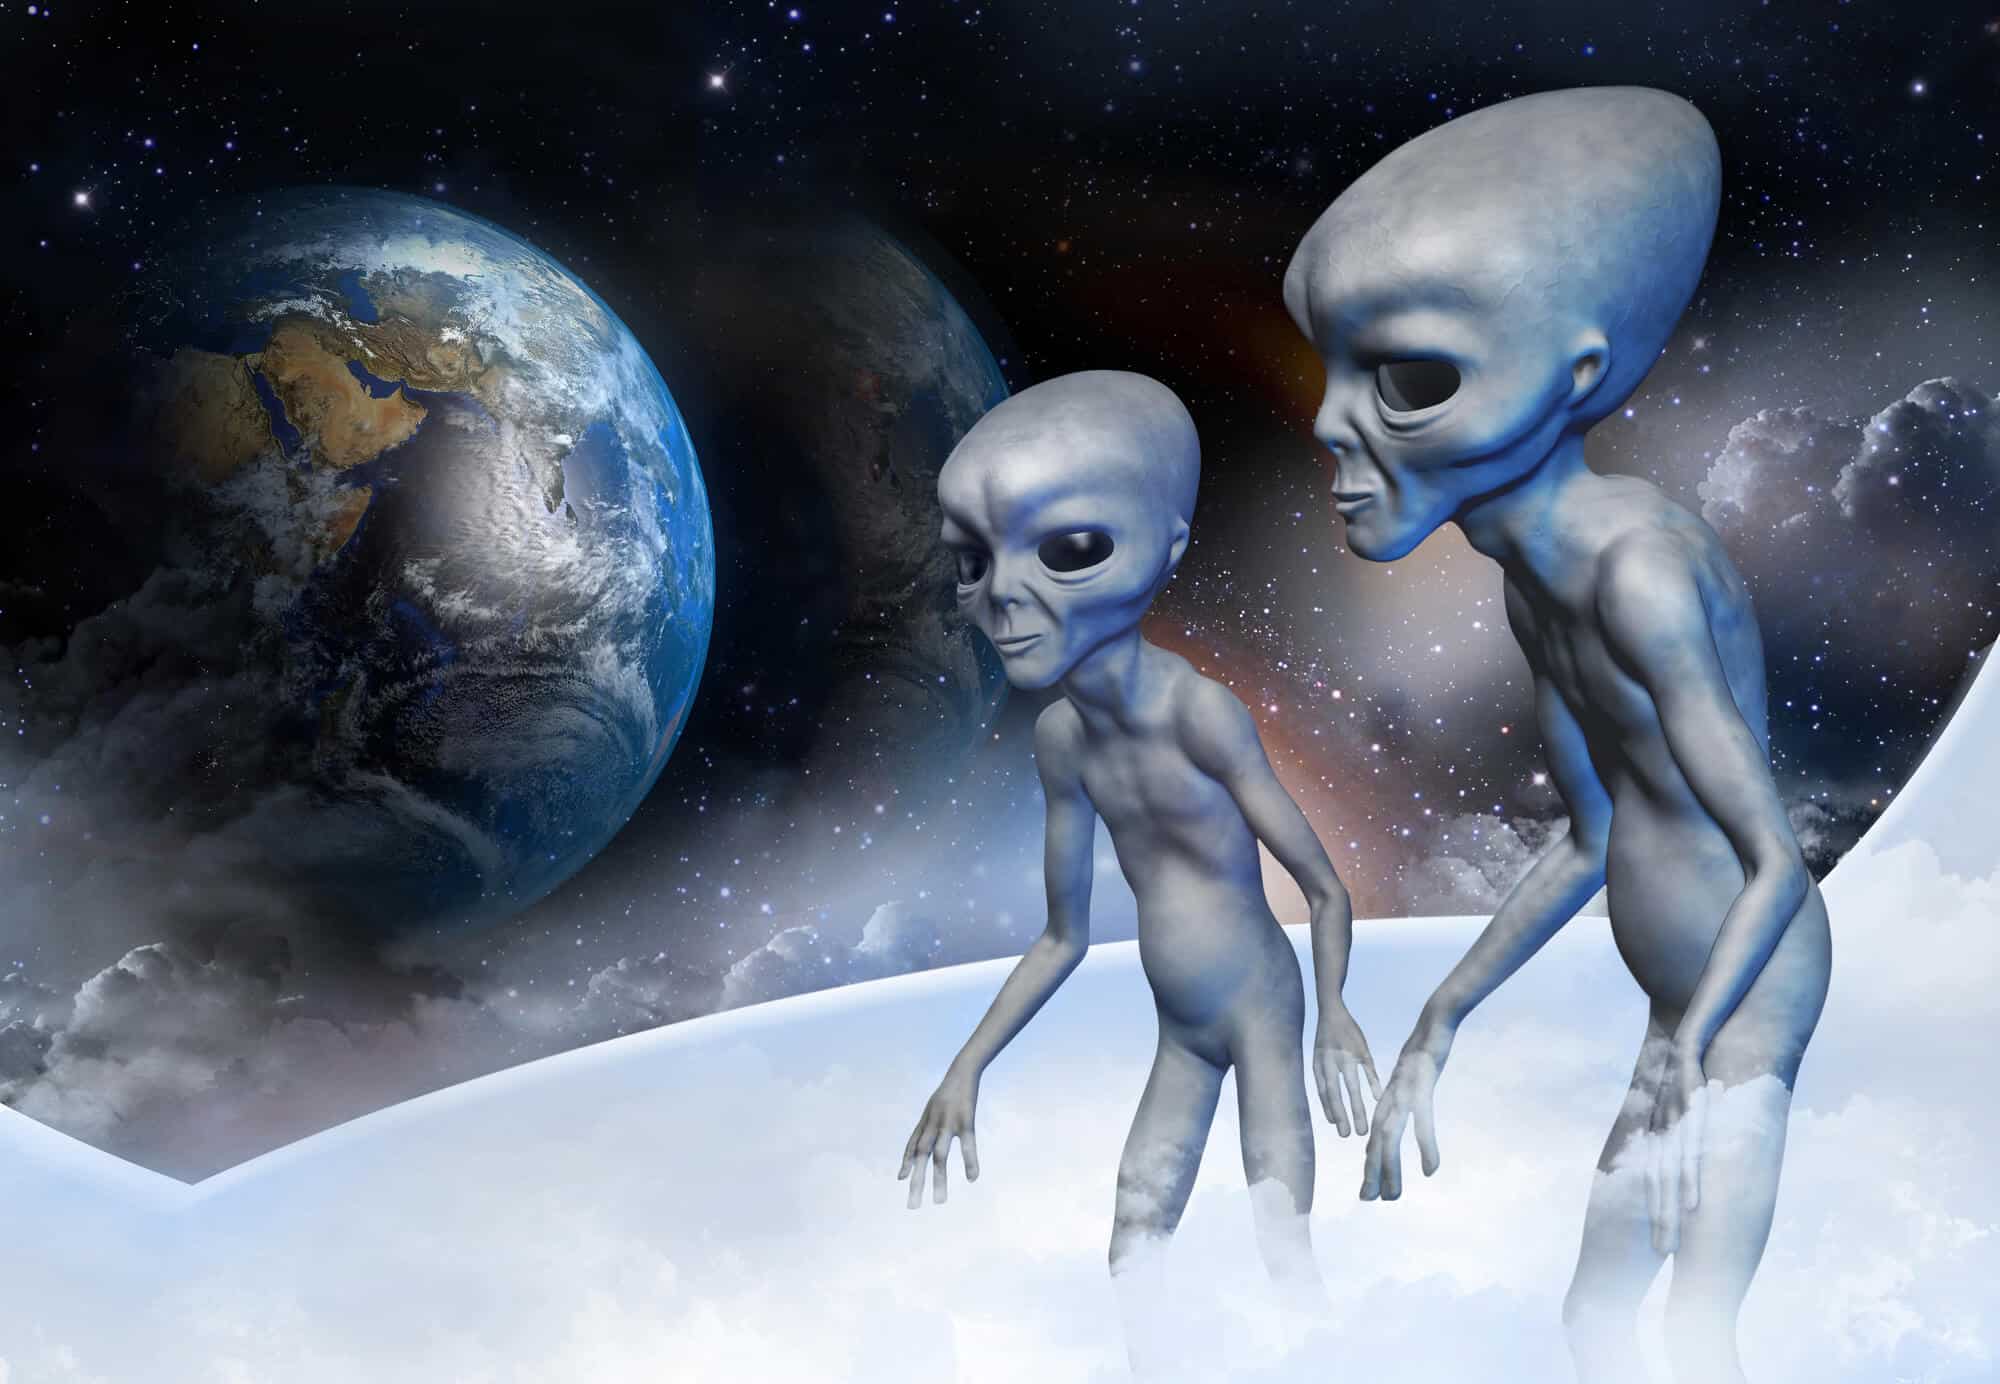 חייזרים מאזינים לאותות מכדור הארץ.   <a href="https://depositphotos.com. ">המחשה: depositphotos.com</a>